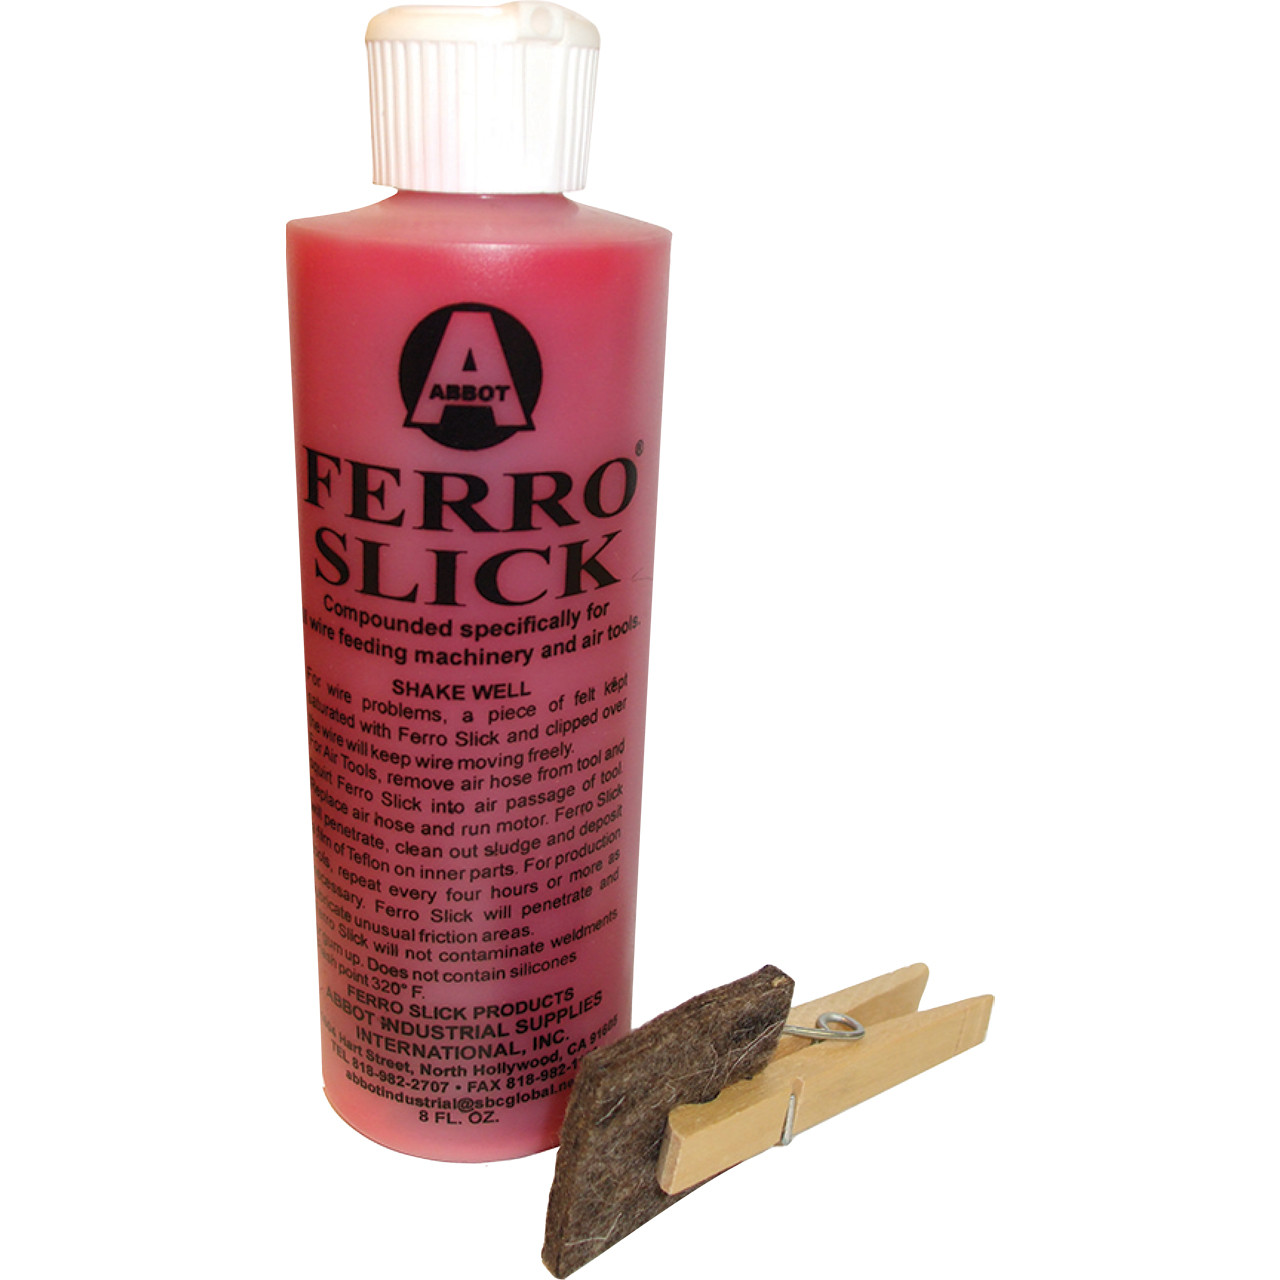 Abbot Industrial Supplies - Ferro Slick Lubricant - RAM Welding Supply